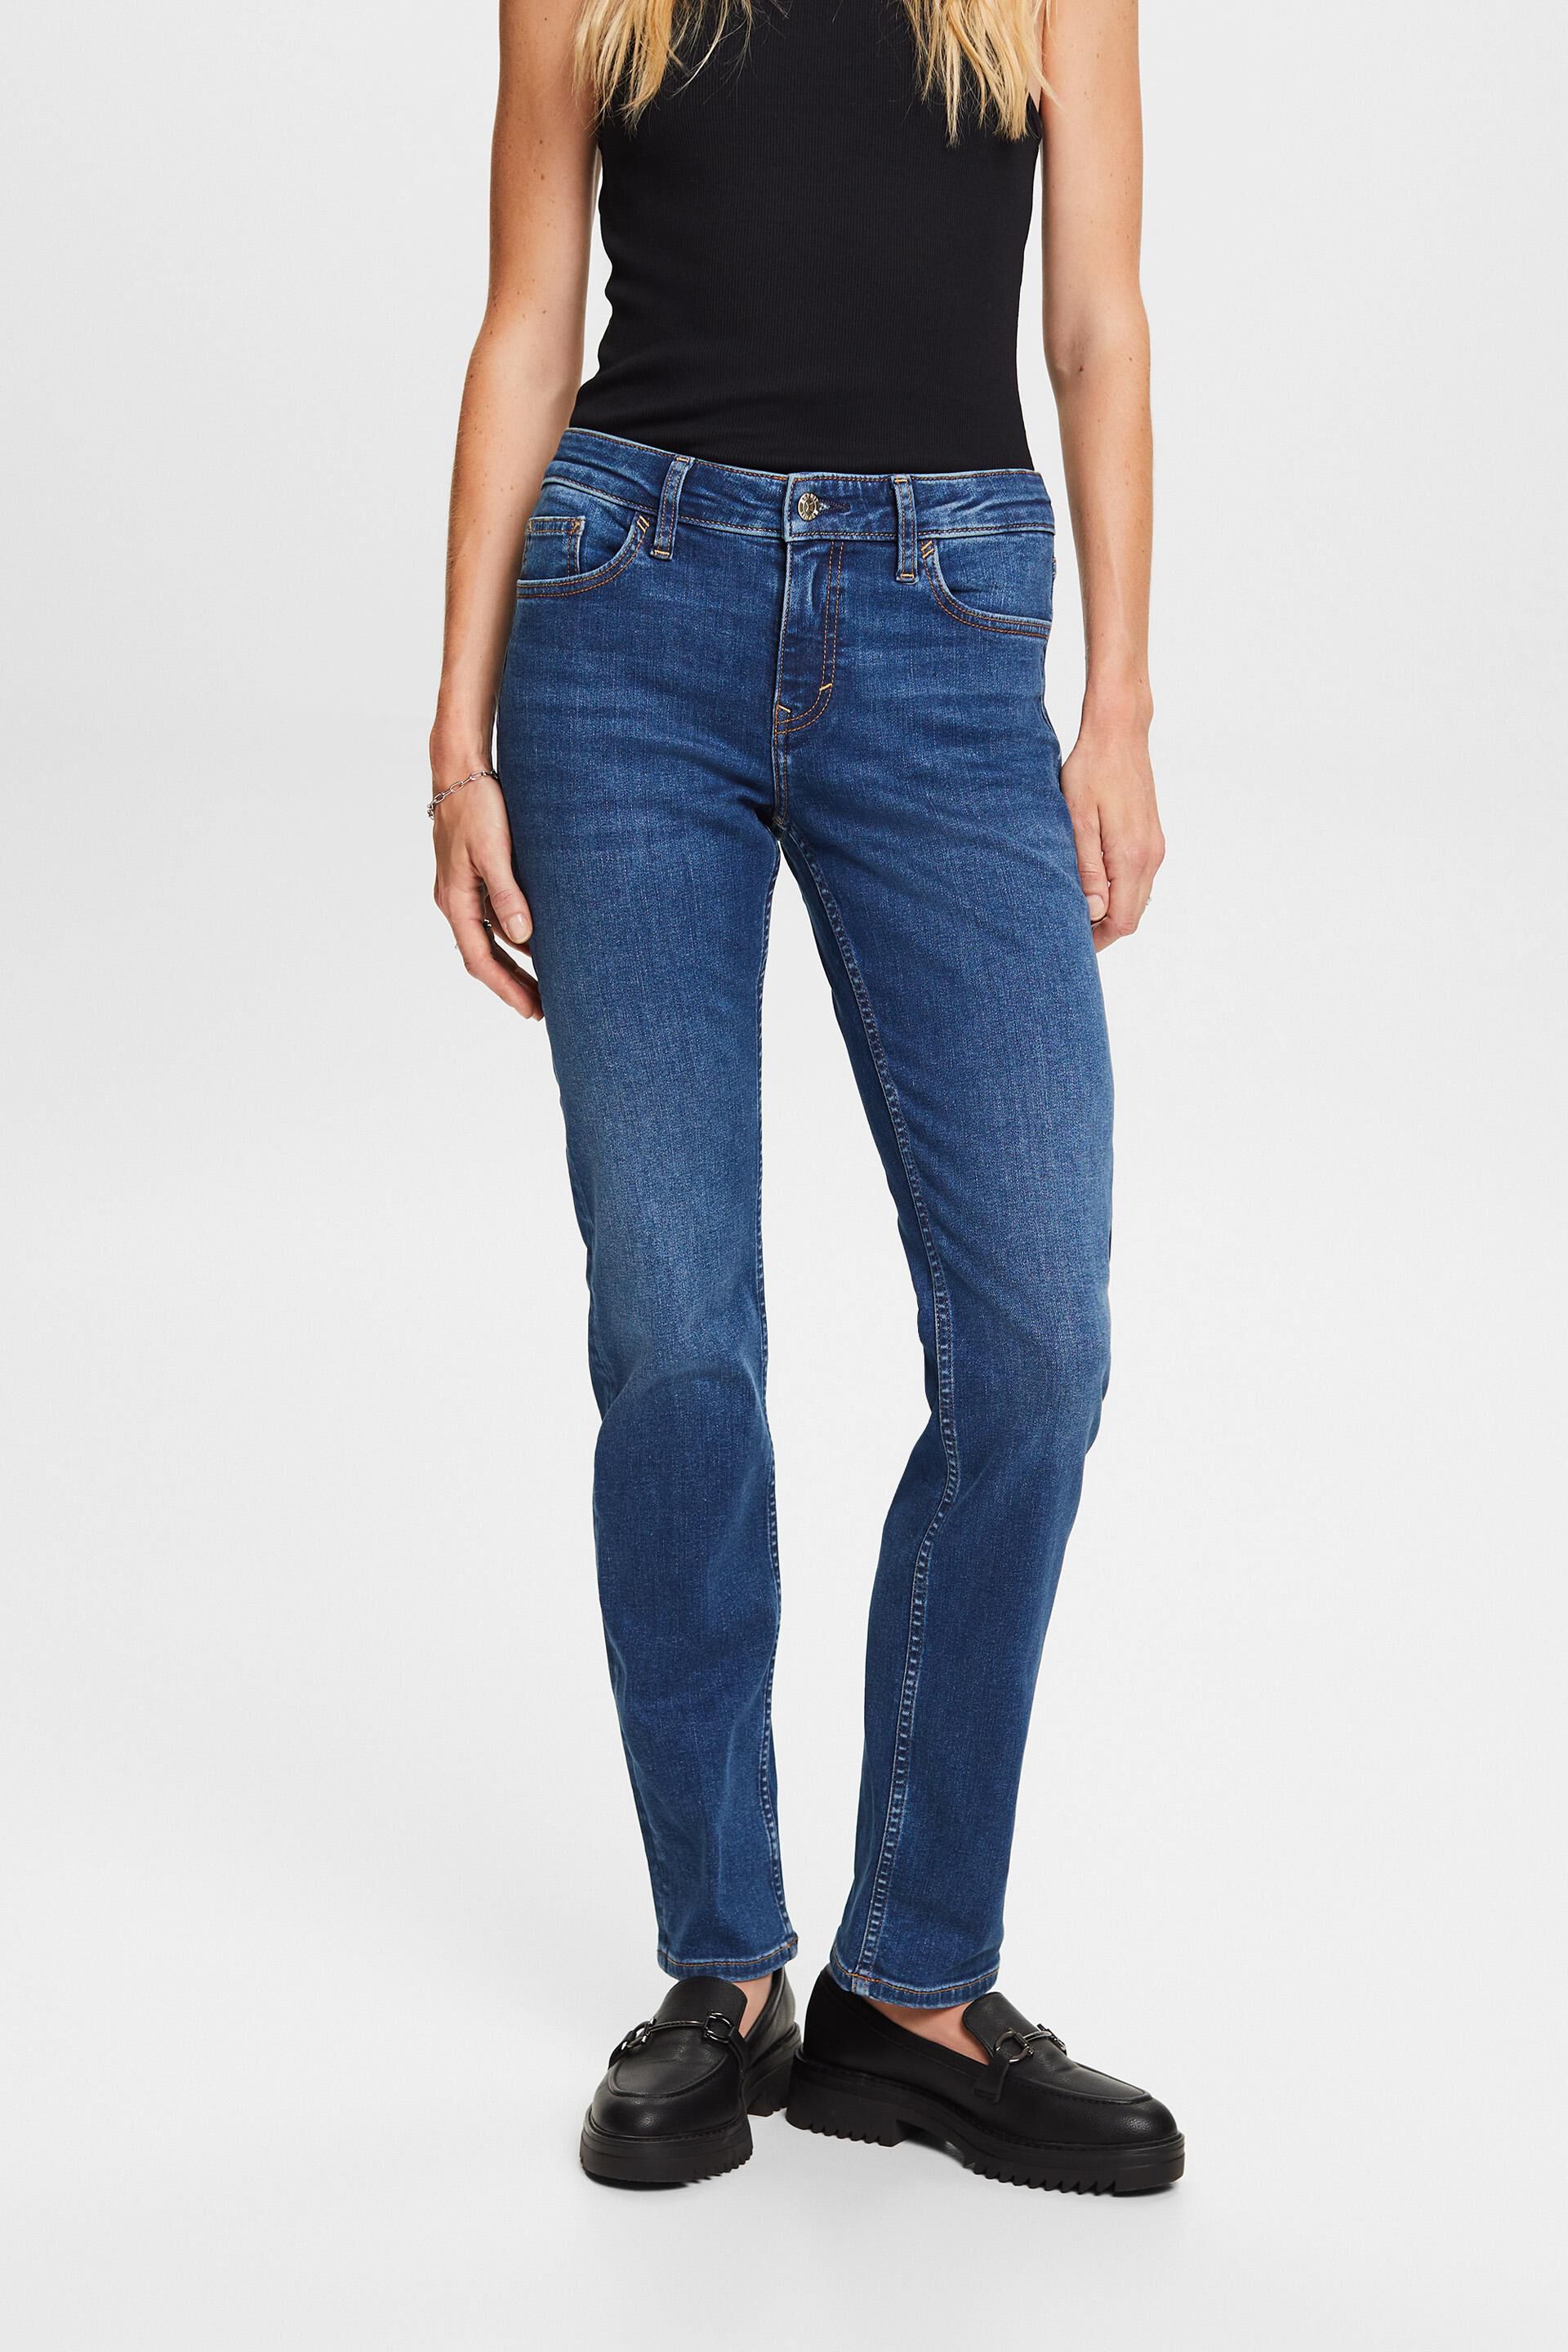 Esprit blend stretch jeans, cotton leg Straight